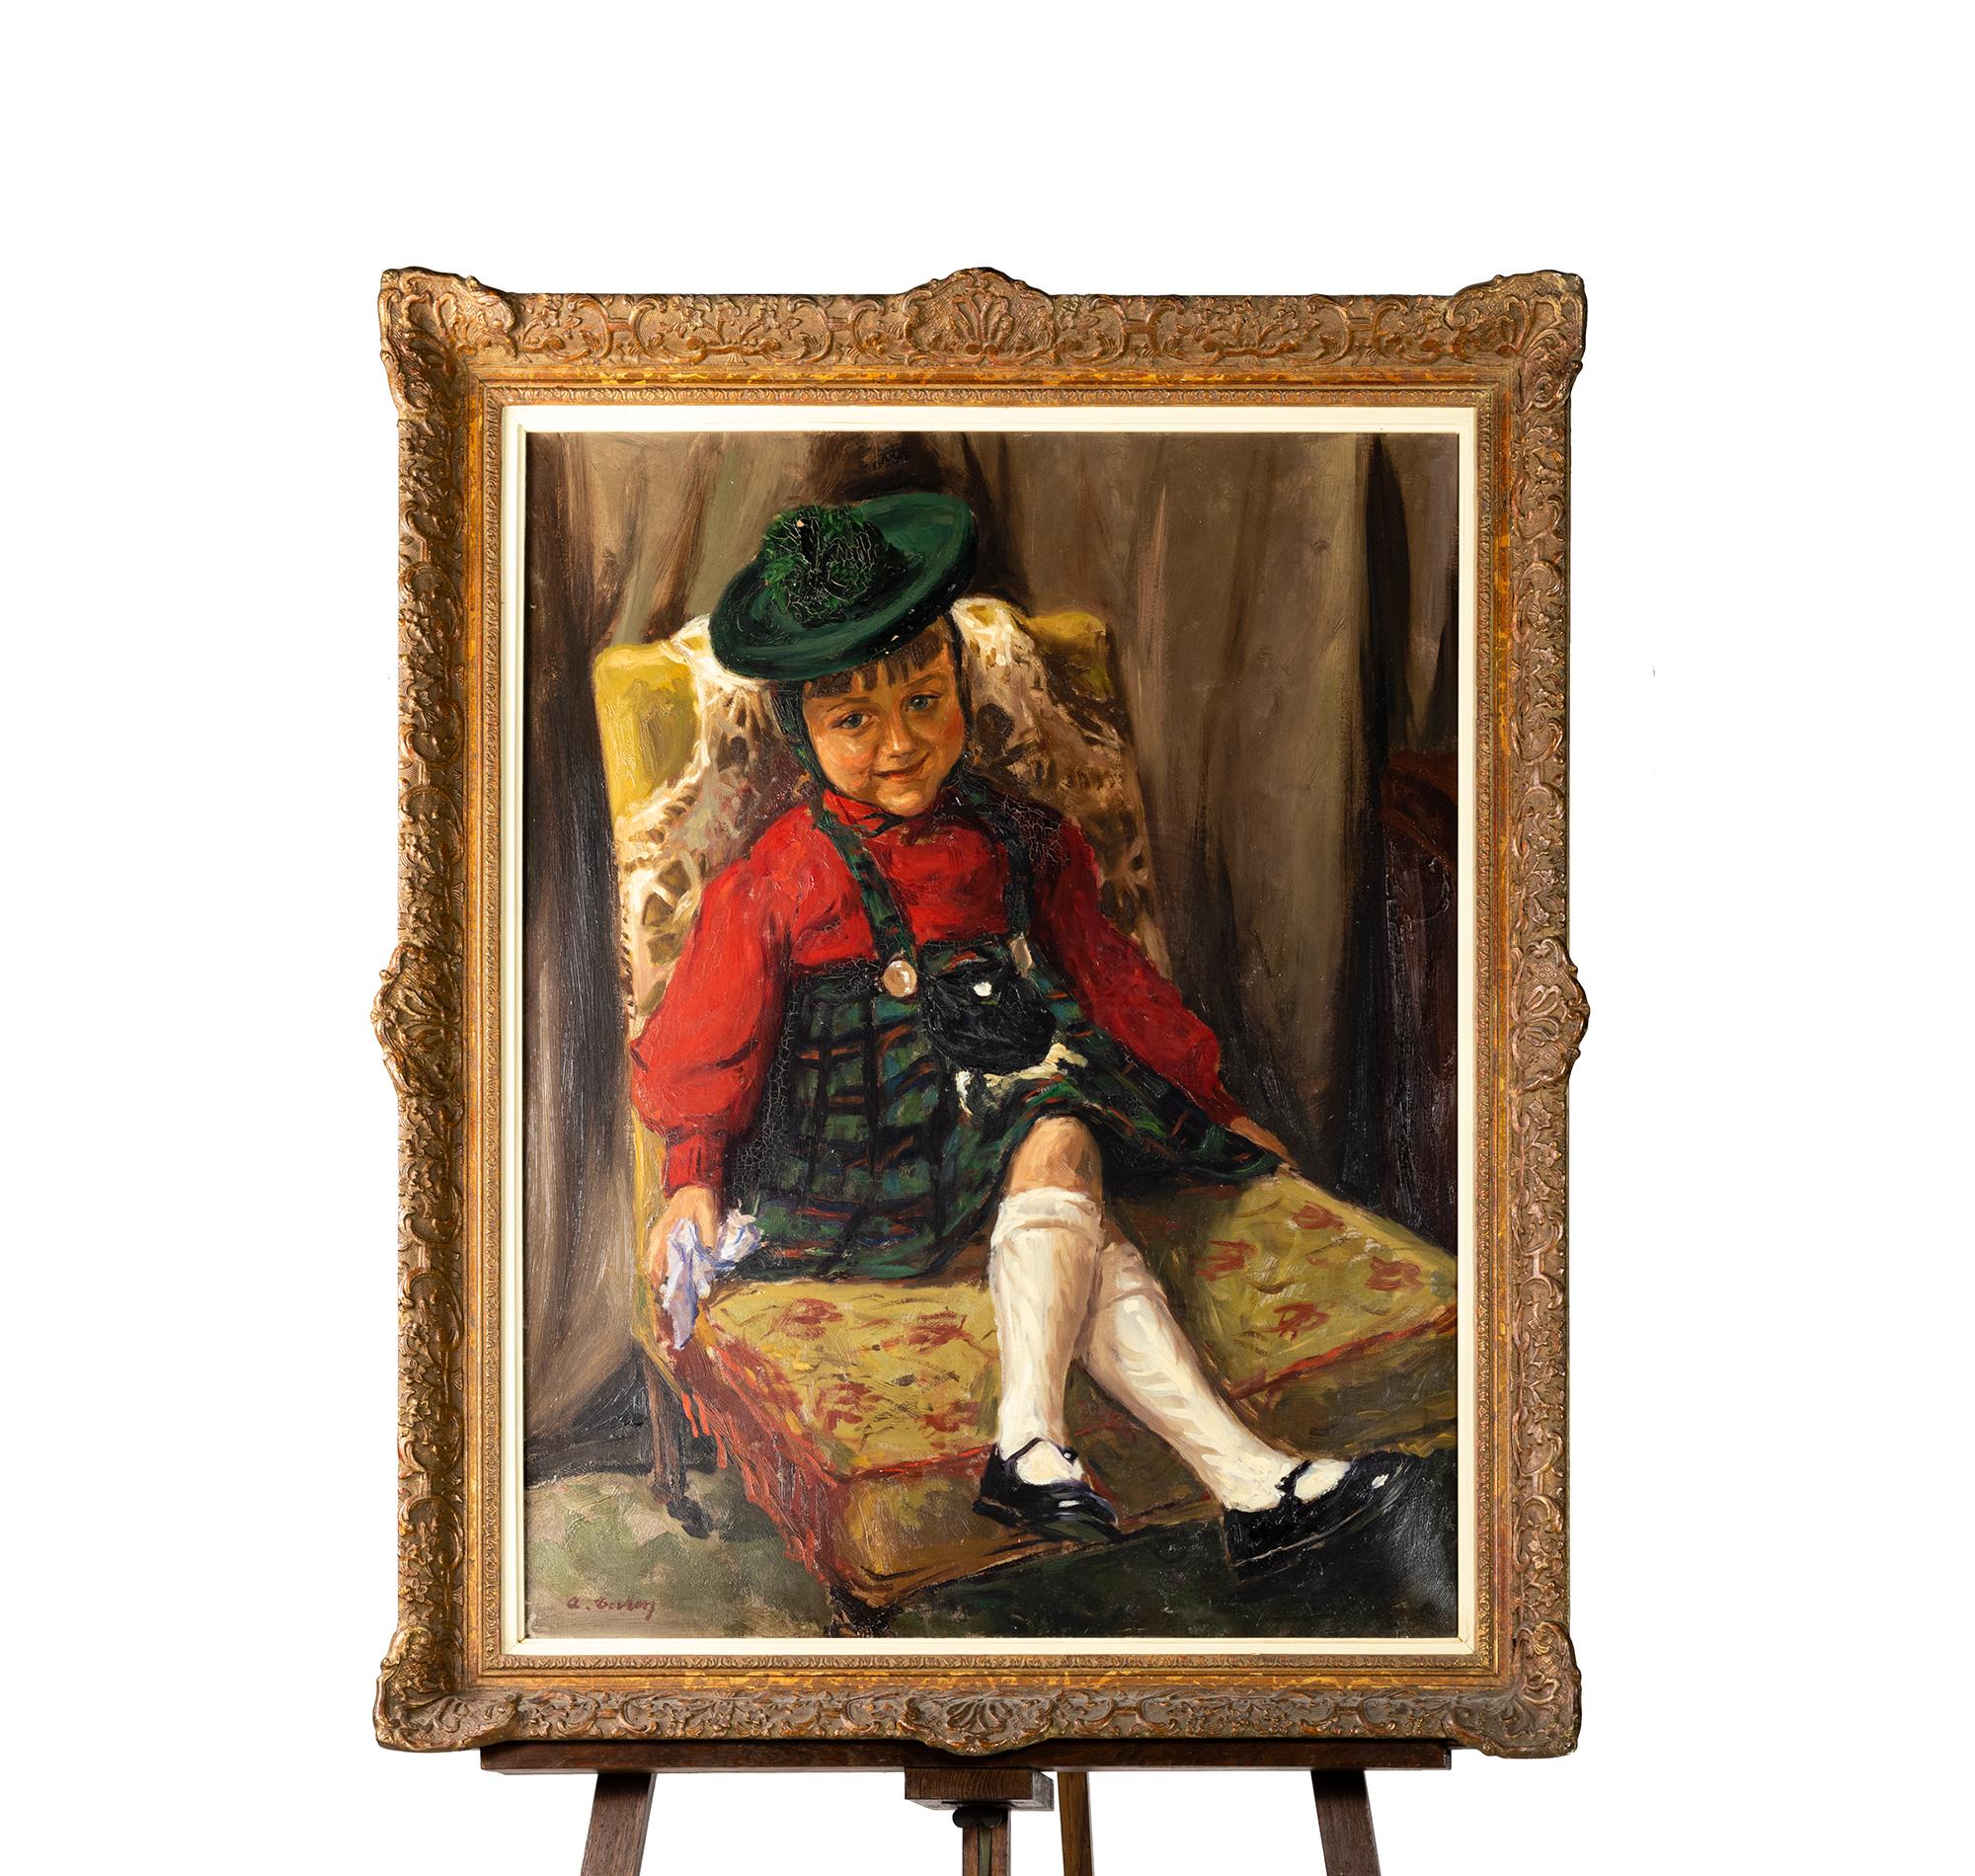 Wojciech Gerson (1831-1901), ein bekannter polnischer Künstler des Realismus, hat ein einzigartiges Meisterwerk geschaffen - ein Gemälde, das ein Kind in einem grünen Kleid zeigt, das anmutig in einem Sessel sitzt. Dieses bemerkenswerte Kunstwerk